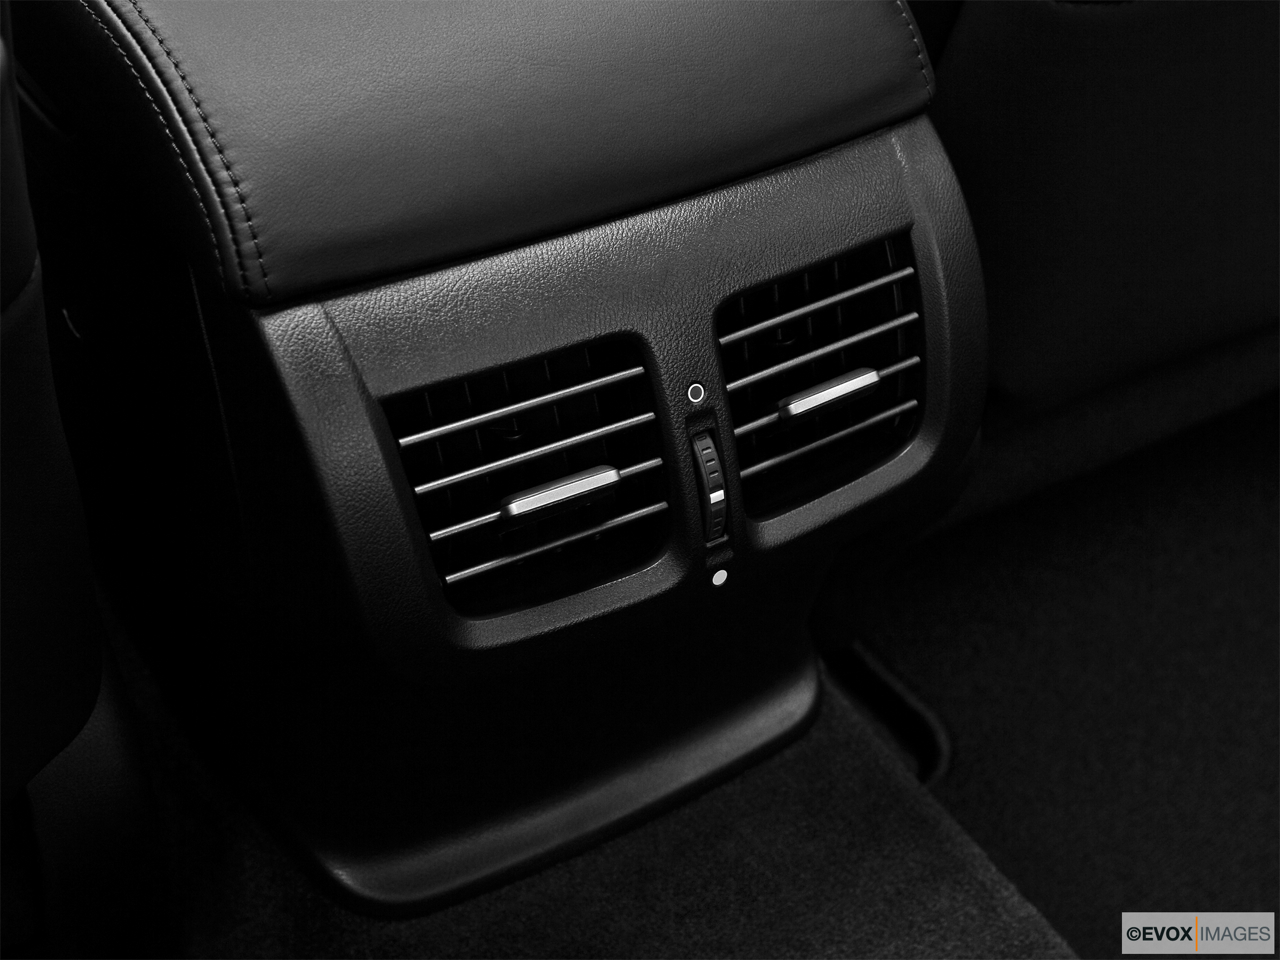 2010 Acura TL TL Rear A/C controls. 